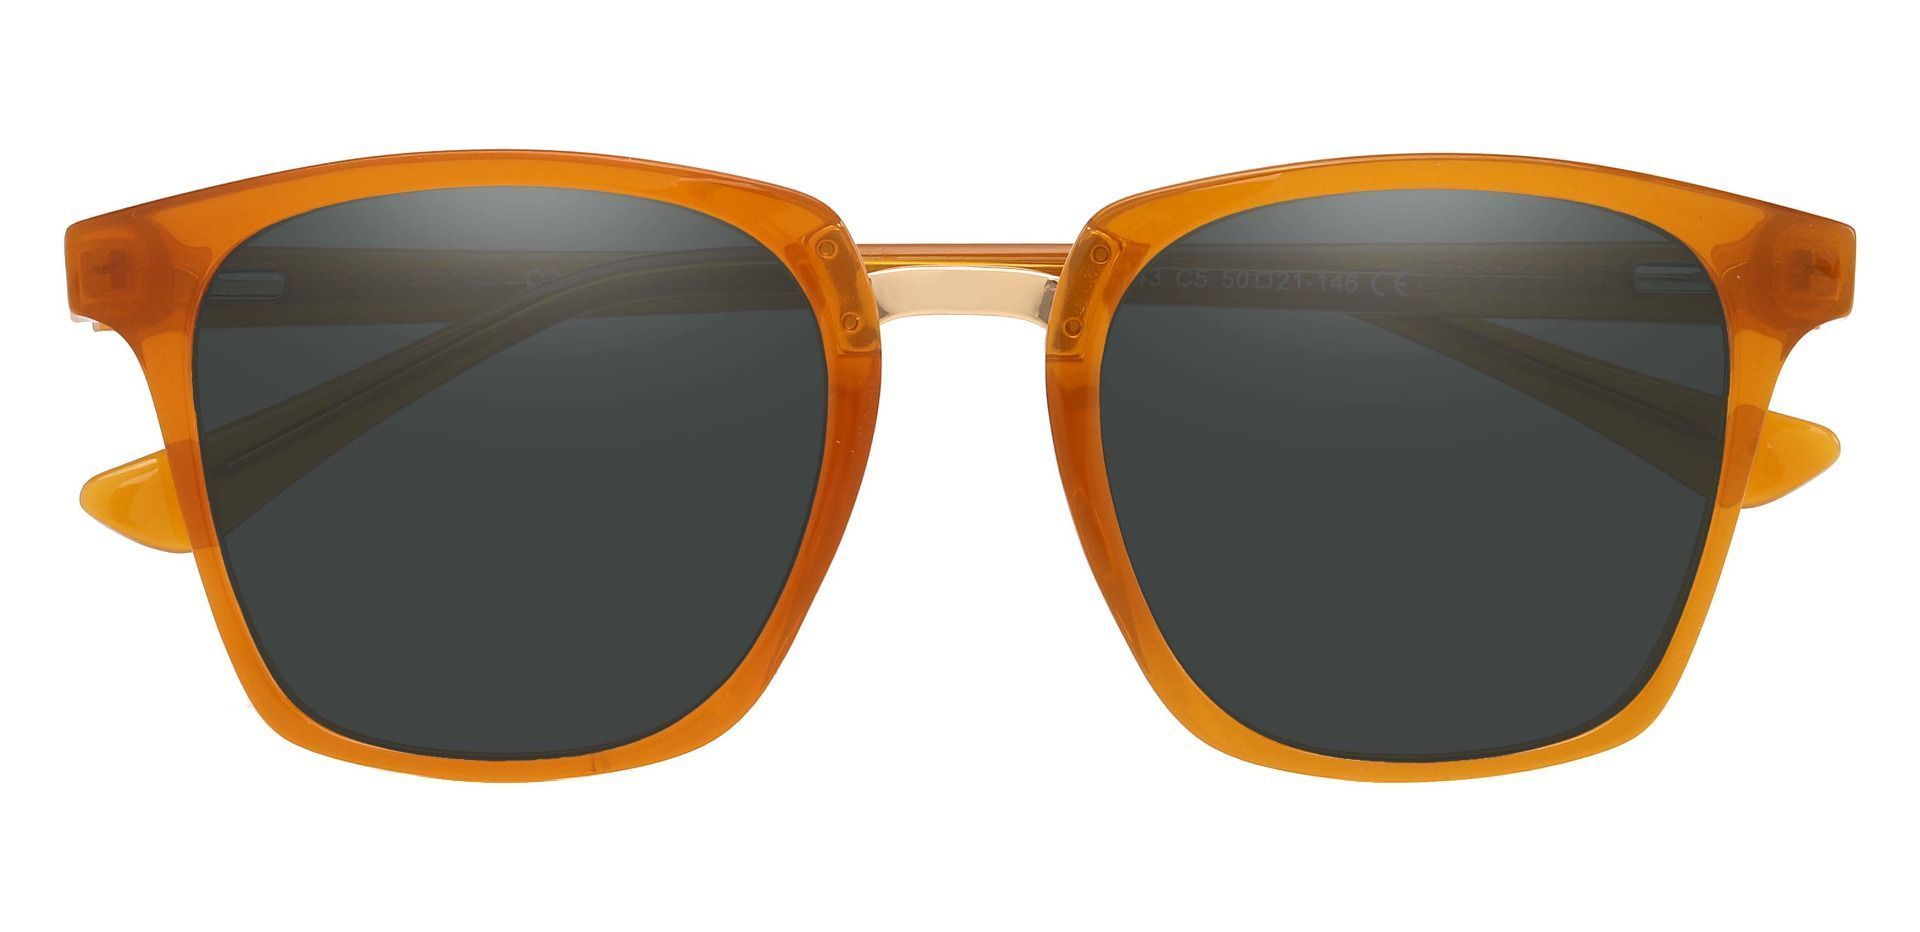 Delta Square Non-Rx Sunglasses - Orange Frame With Gray Lenses